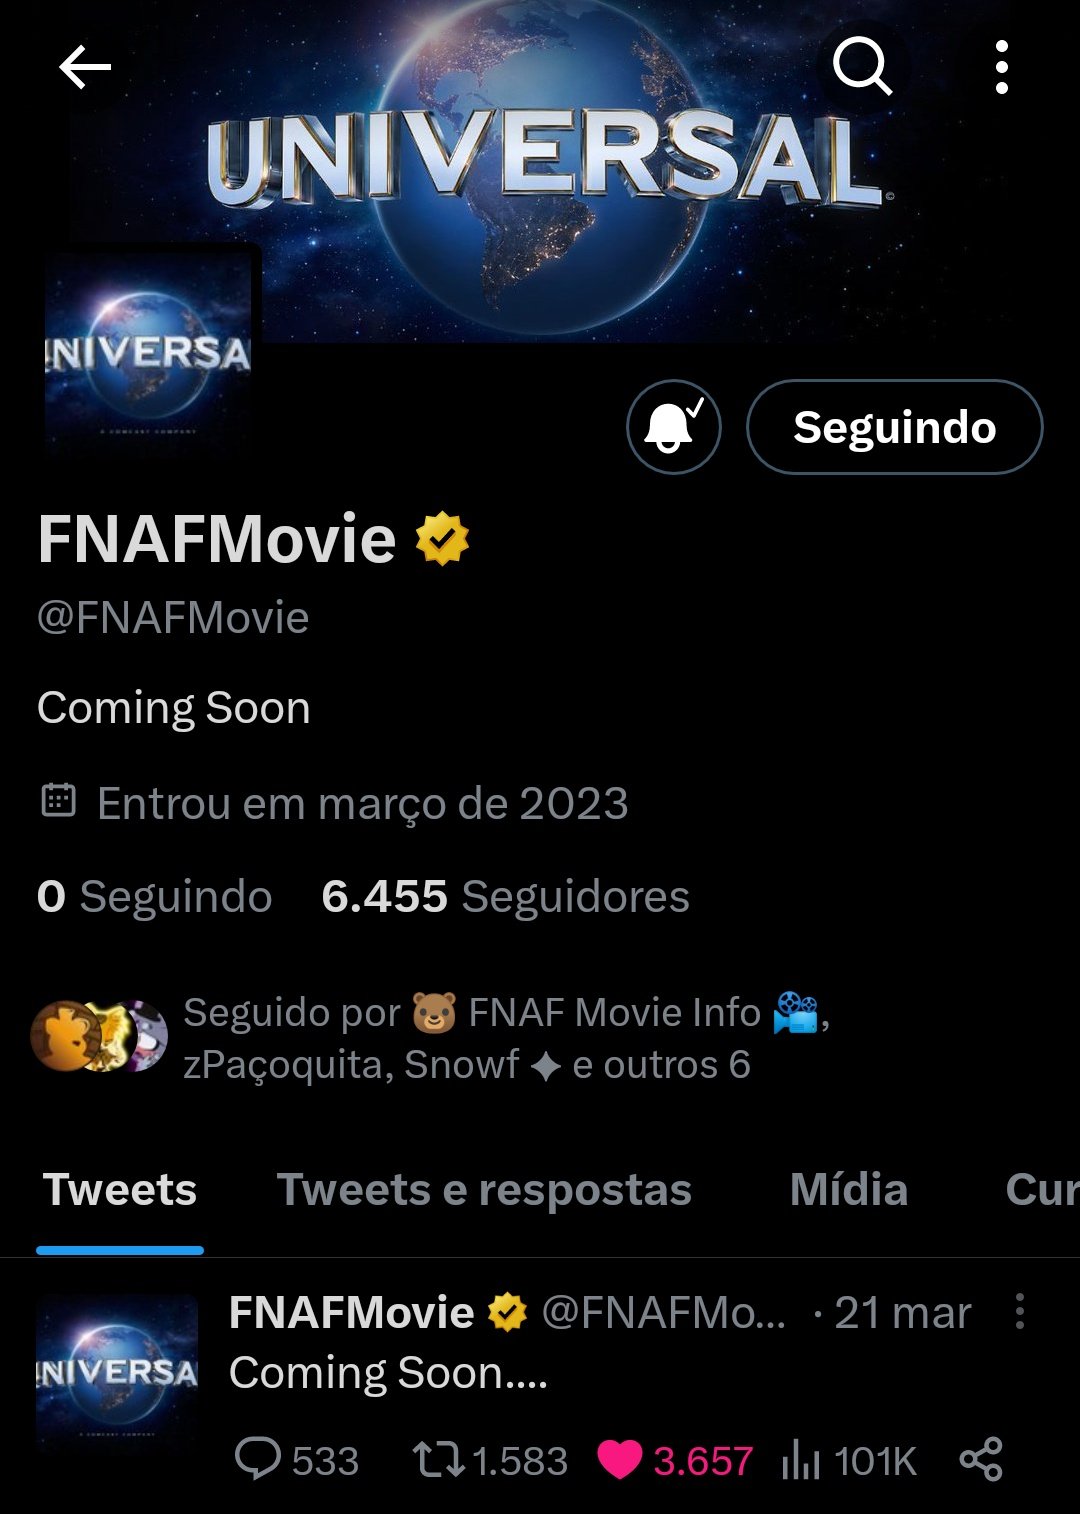 Fazbear BR - Updates de FNAF on X: NOTÍCIA URGENTE!!!!!!!! A DATA DO FILME  DE FIVE NIGHTS AT FREDDY'S FOI ANUNCIADA! O FILME LANÇARÁ NOS CINEMAS DIA  27 DE OUTUBRO DE 2023 (